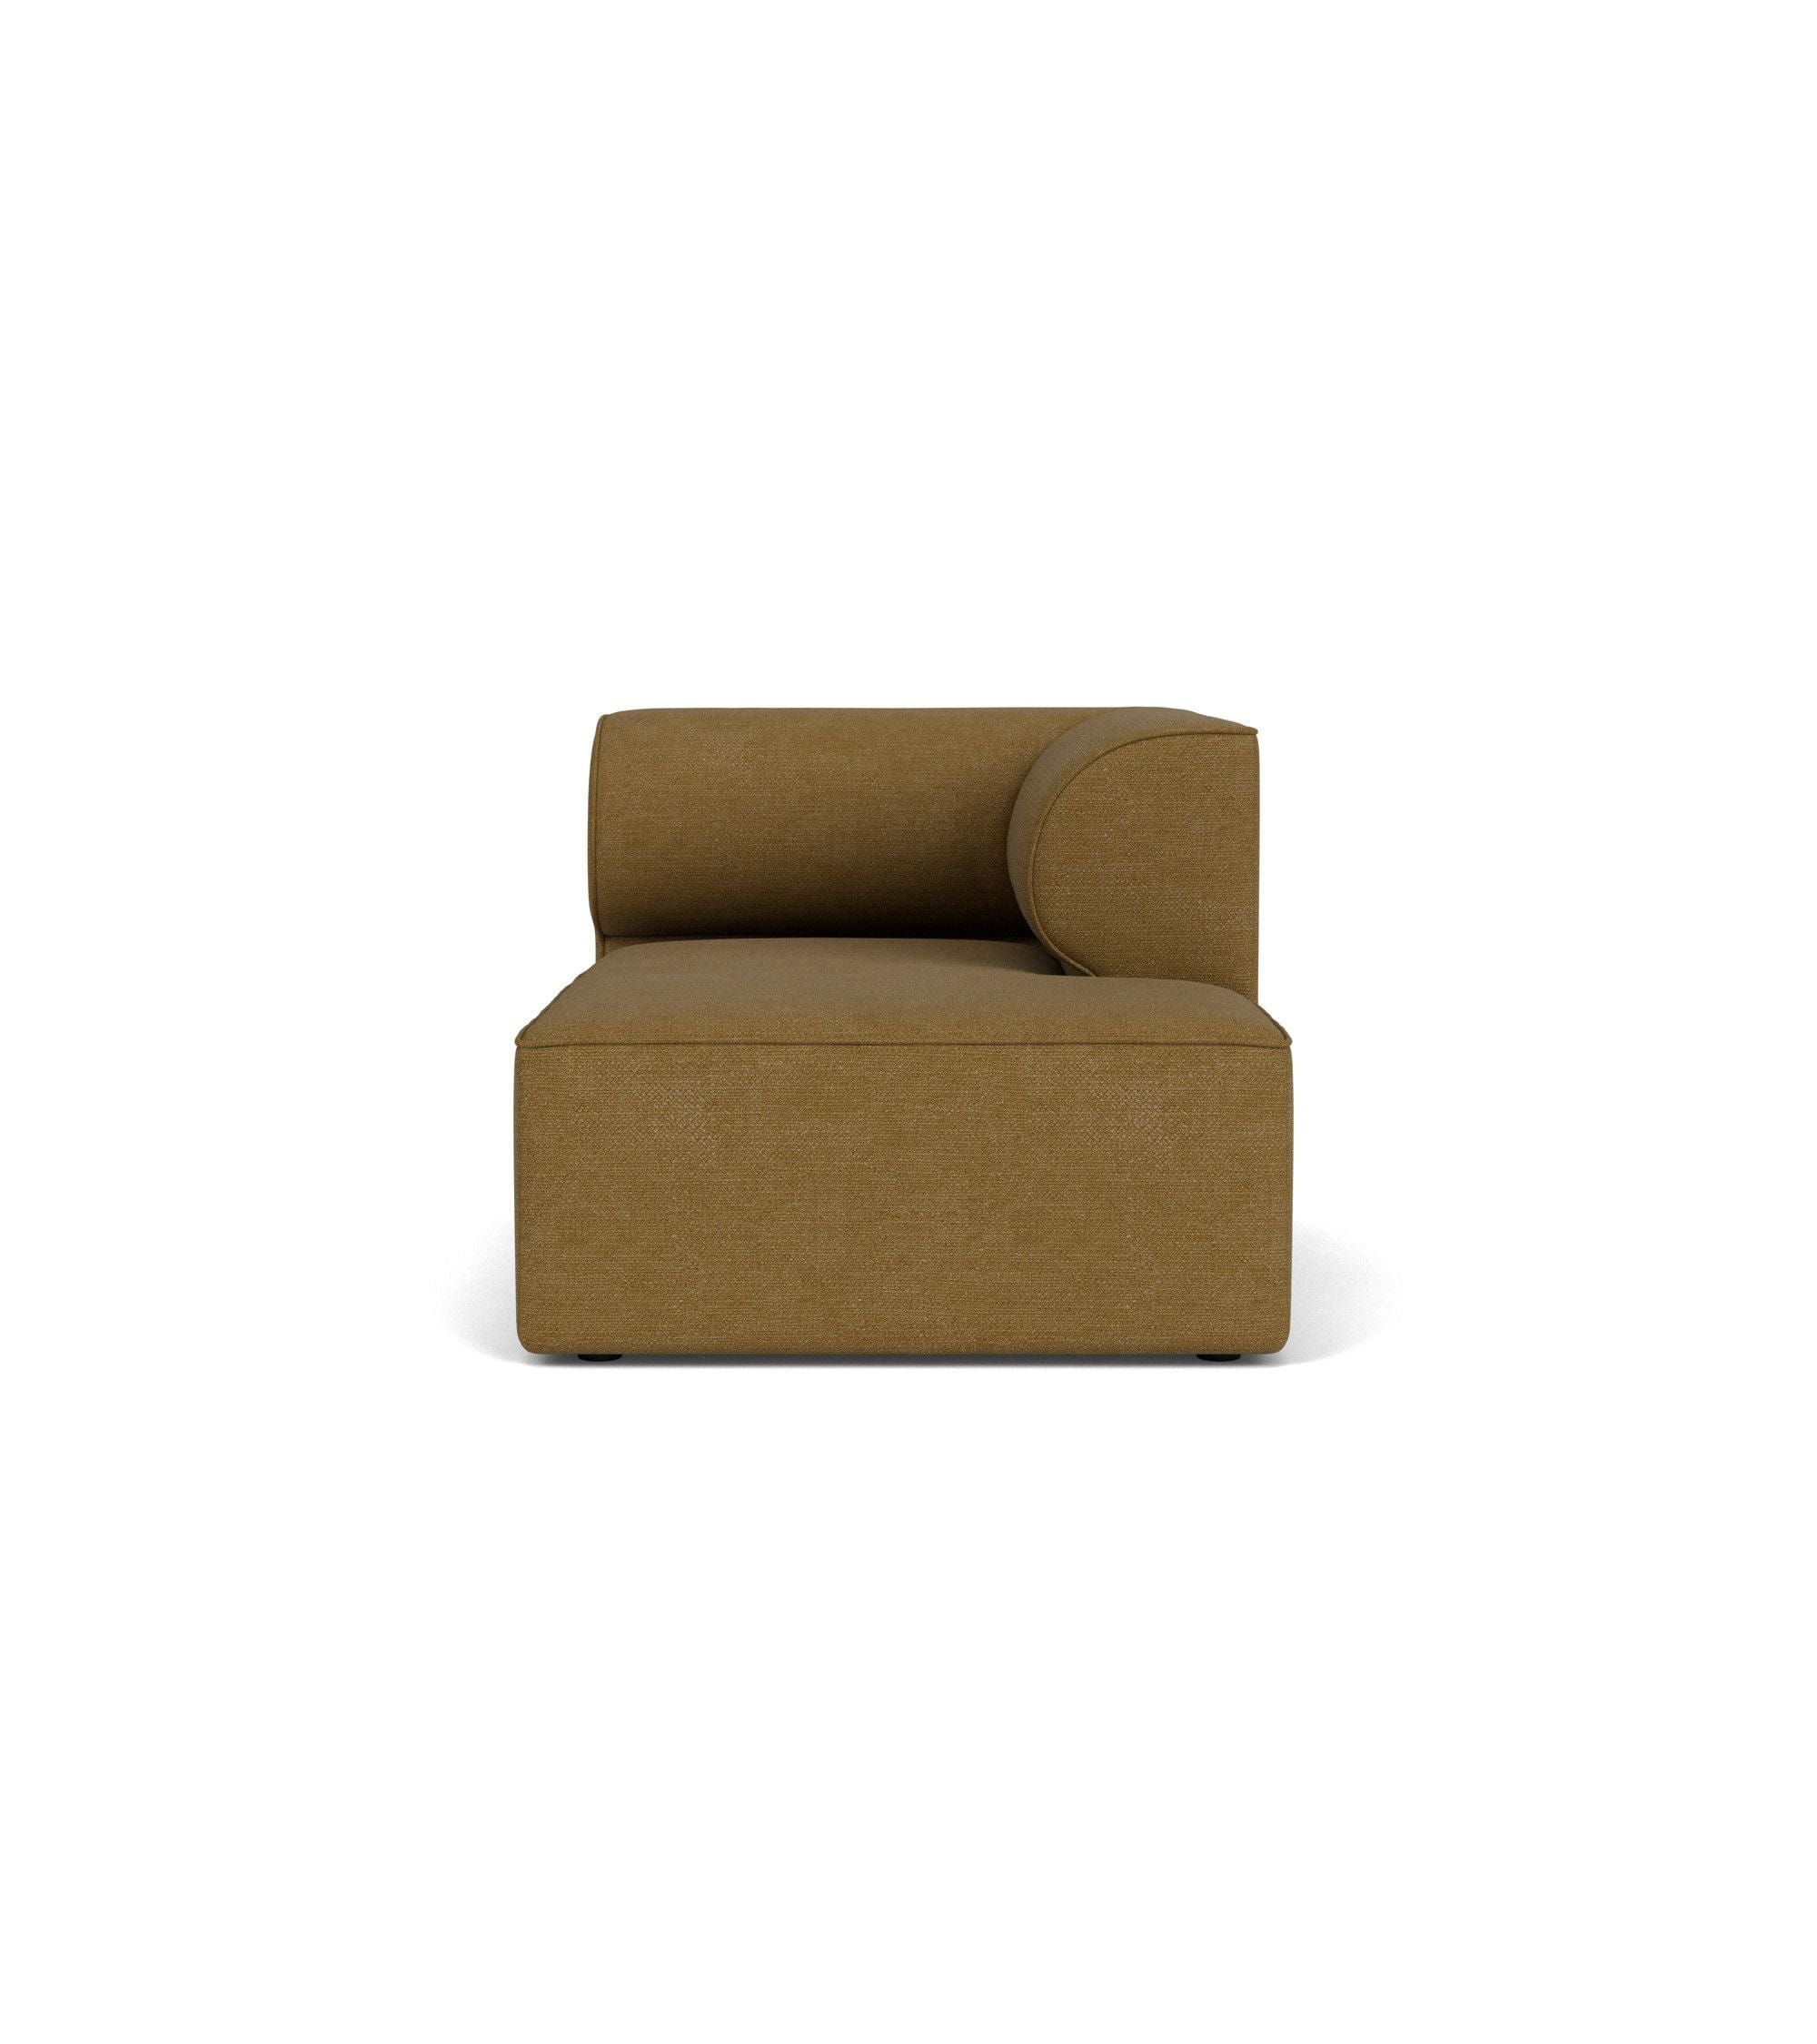 Audo Copenhagen Eave Modular Upholstered Sofa Chaise Longue 86x129 Cm Right, Bouclé Gold